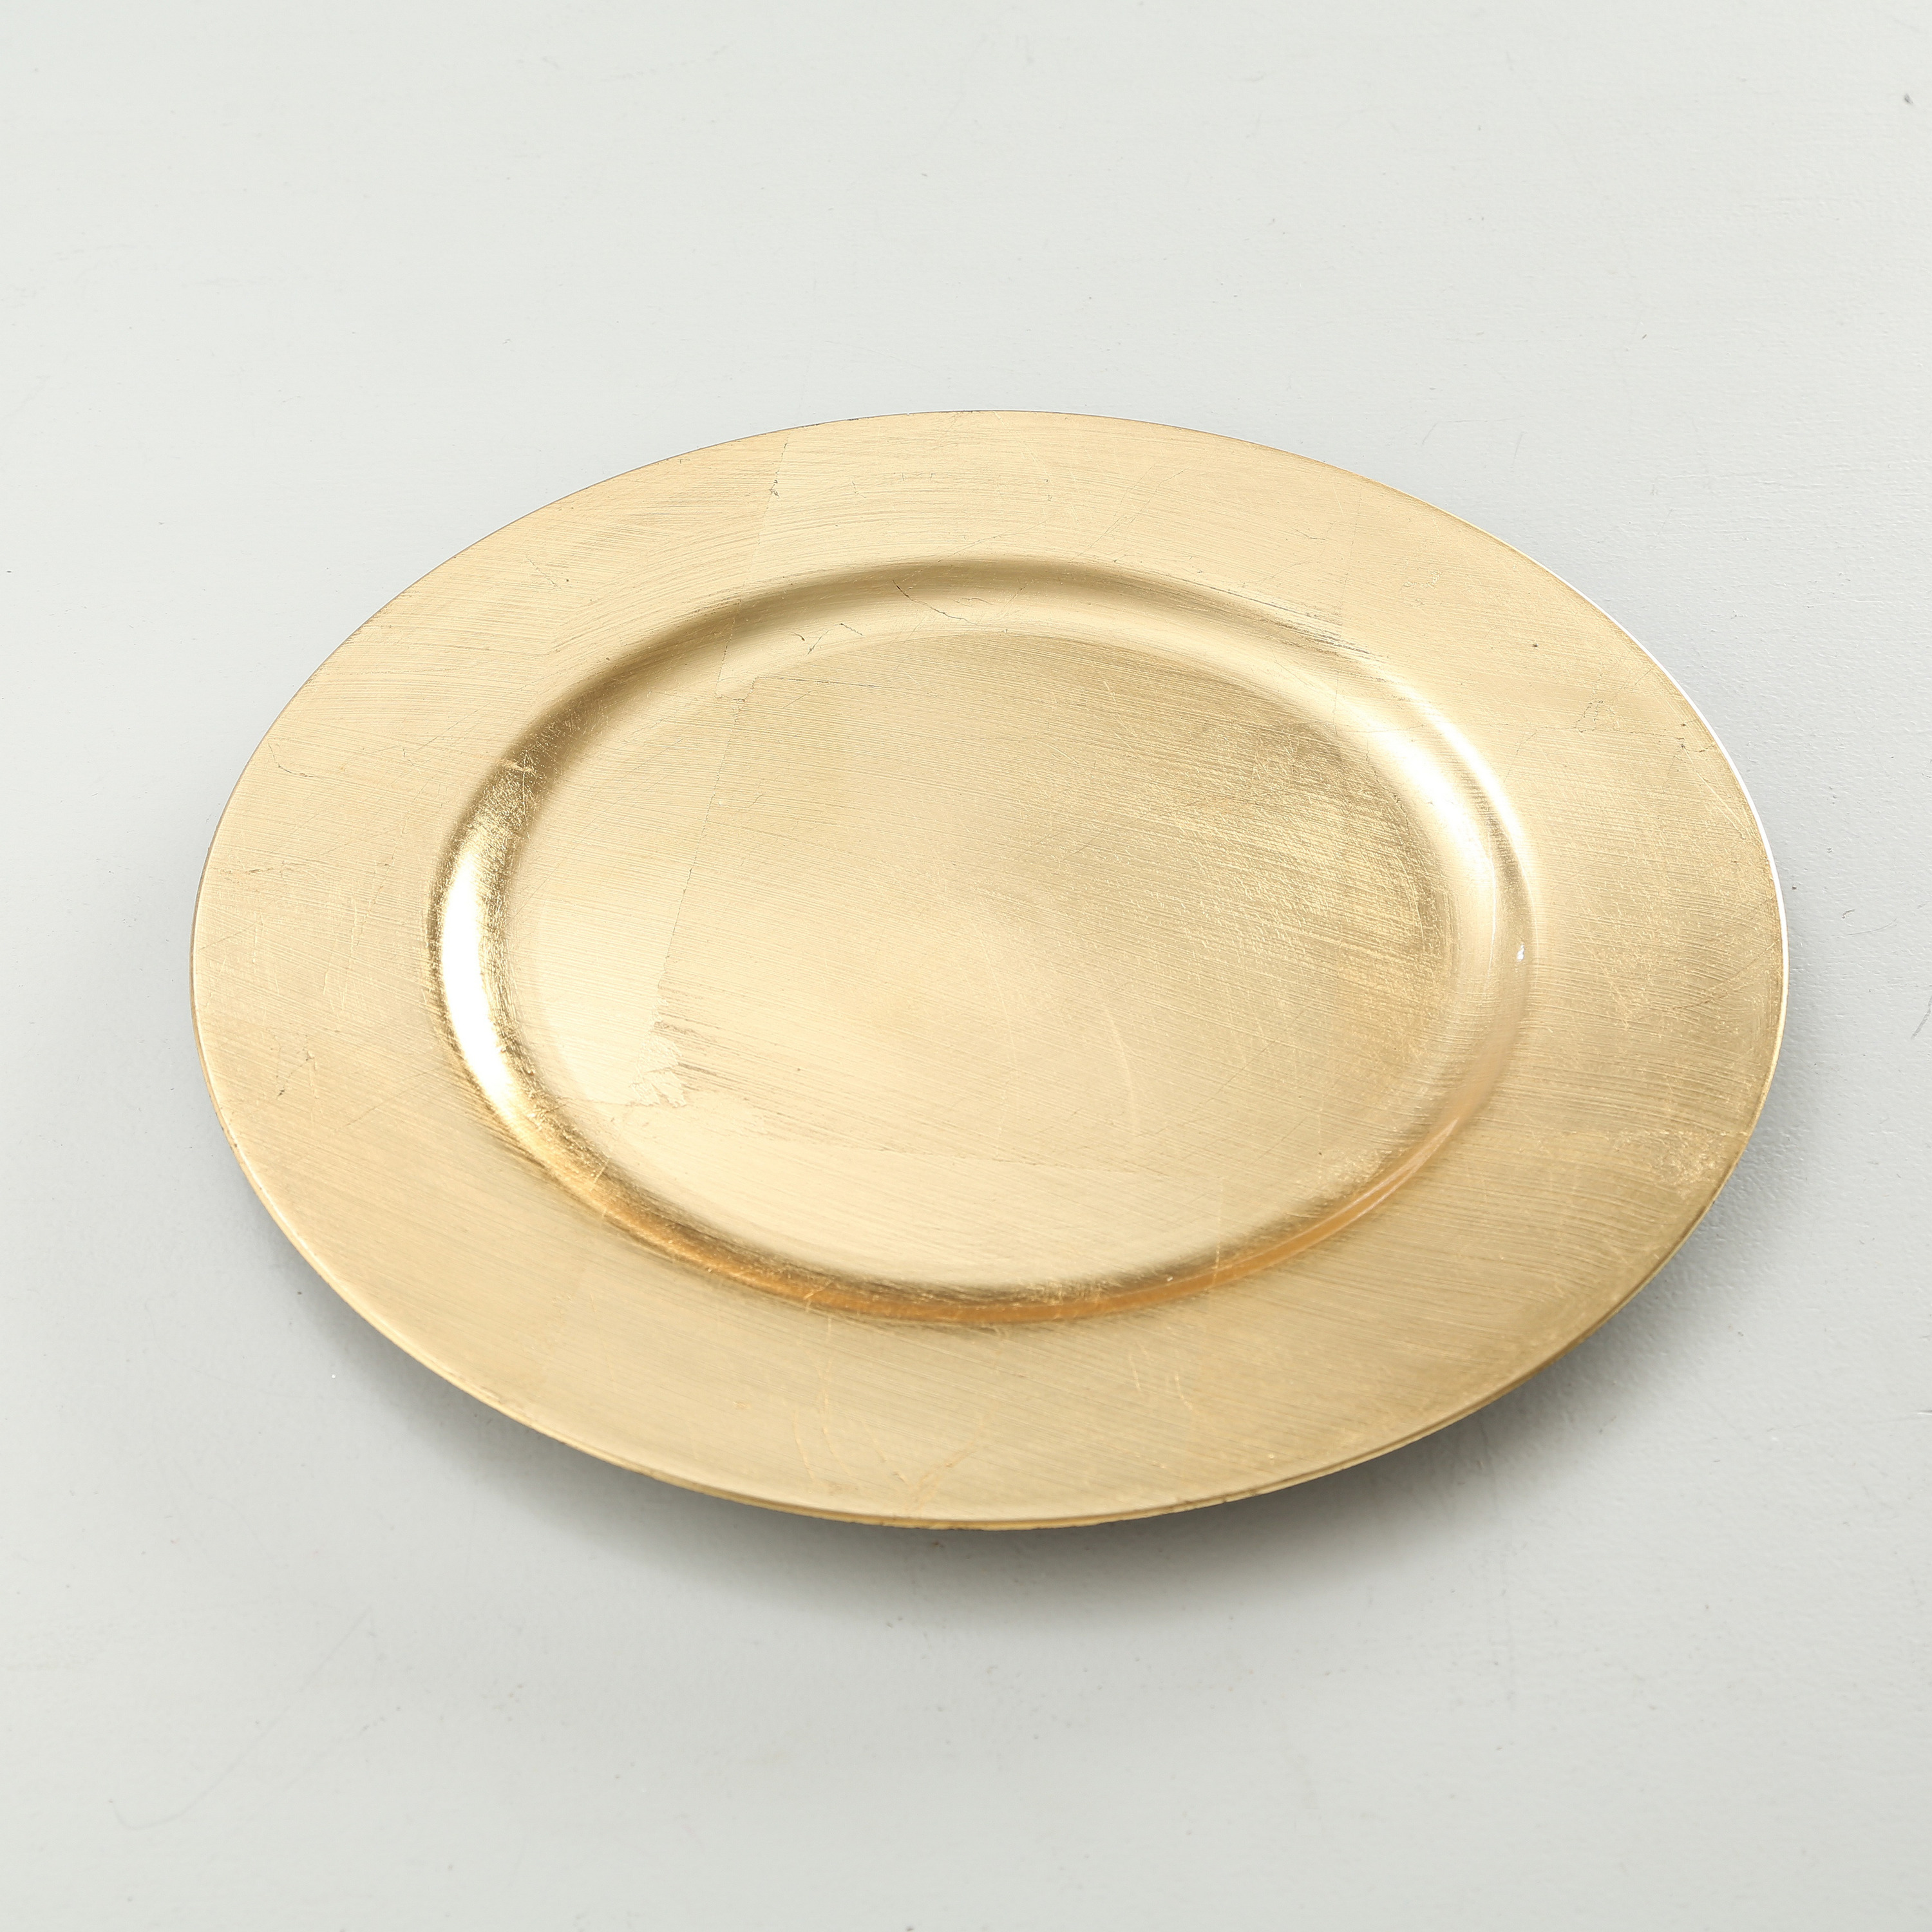 4x Ronde goudkleurige onderzet diner-eettafel borden 33 cm